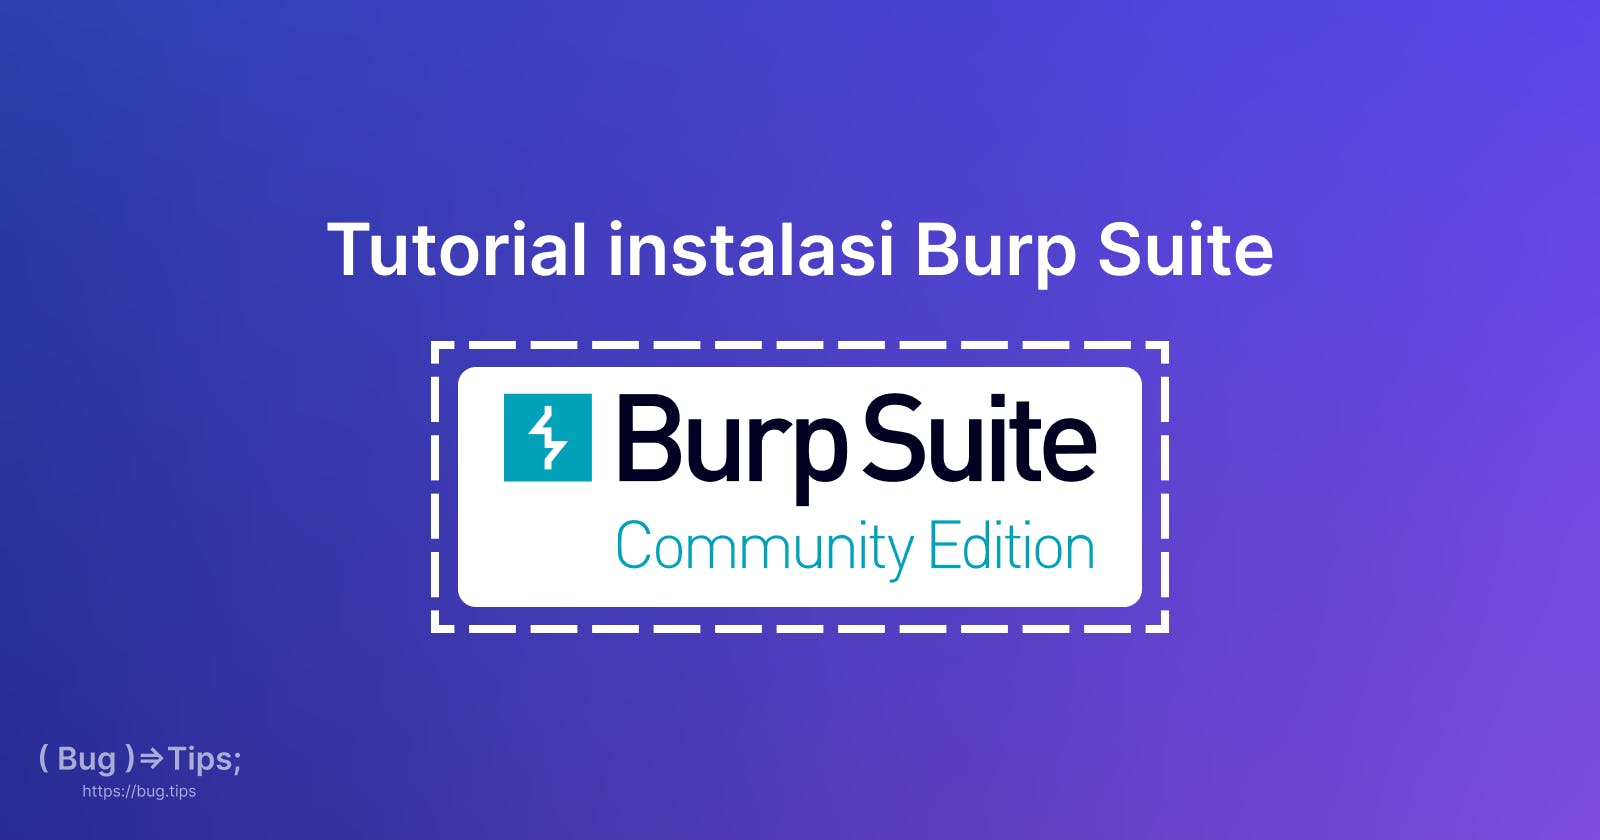 Tutorial instalasi Burp Suite di linux